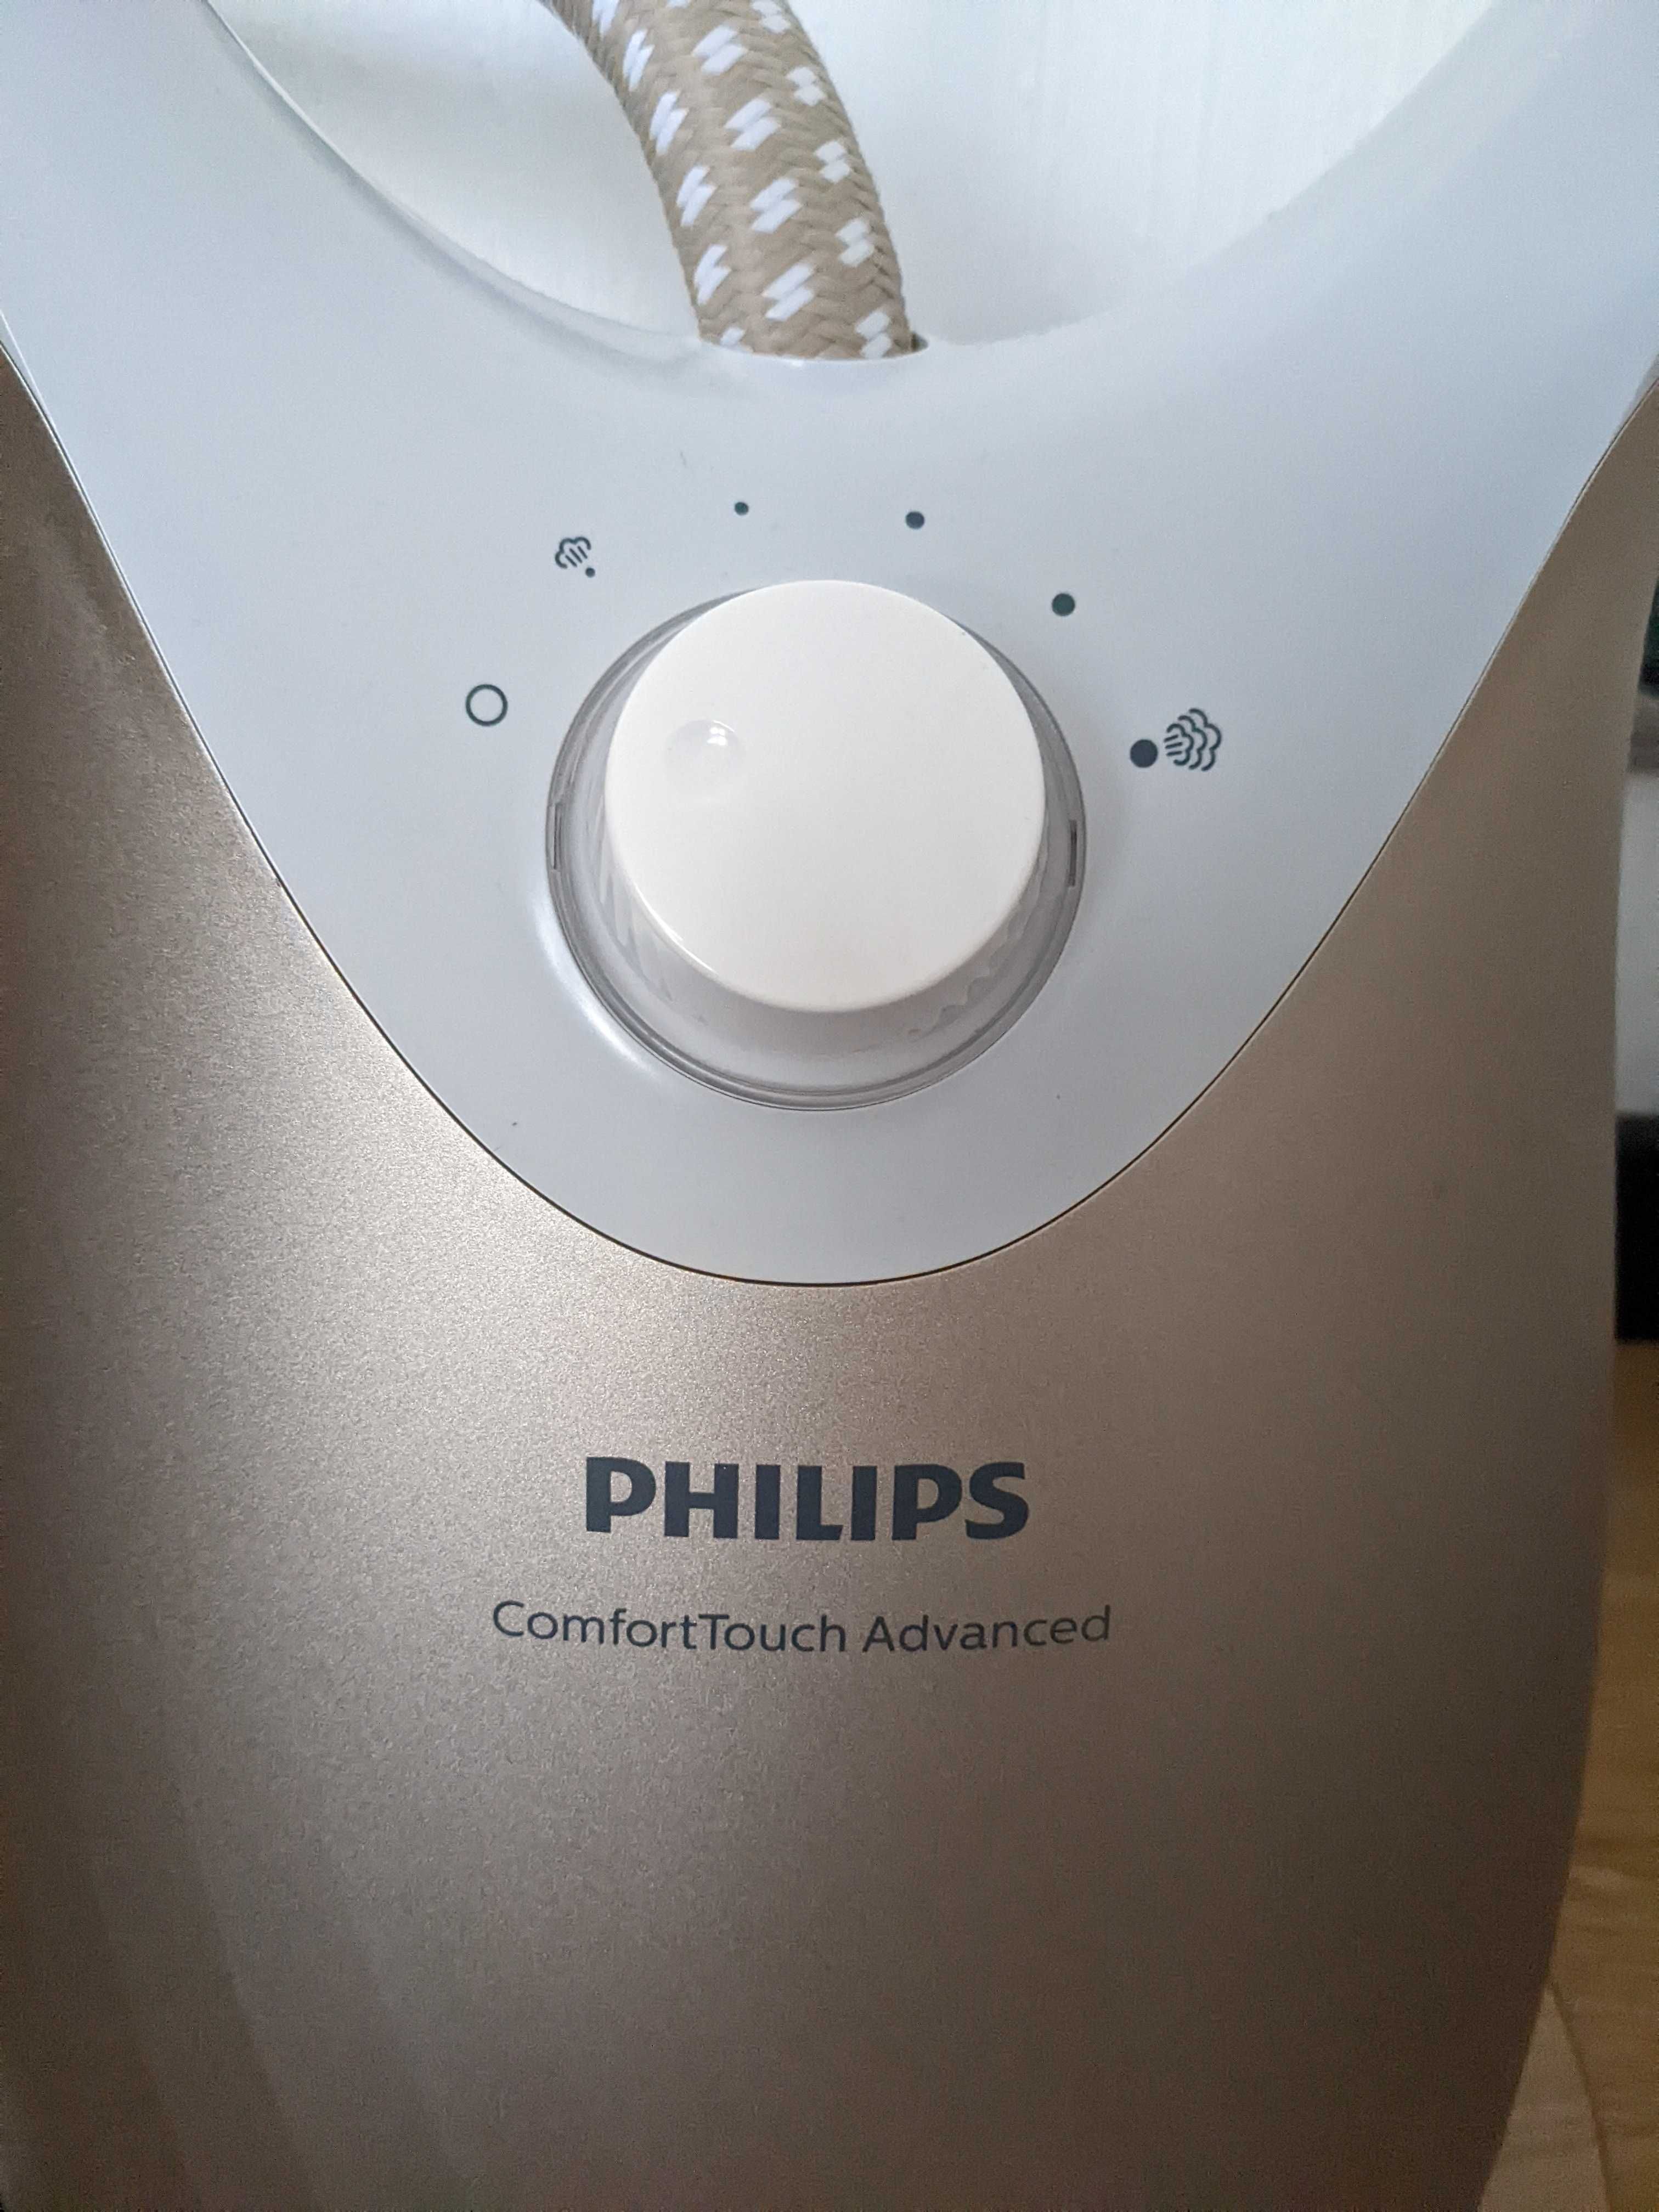 Вертикальный отпариватель стационарный Philips ComfortTouch Advanced